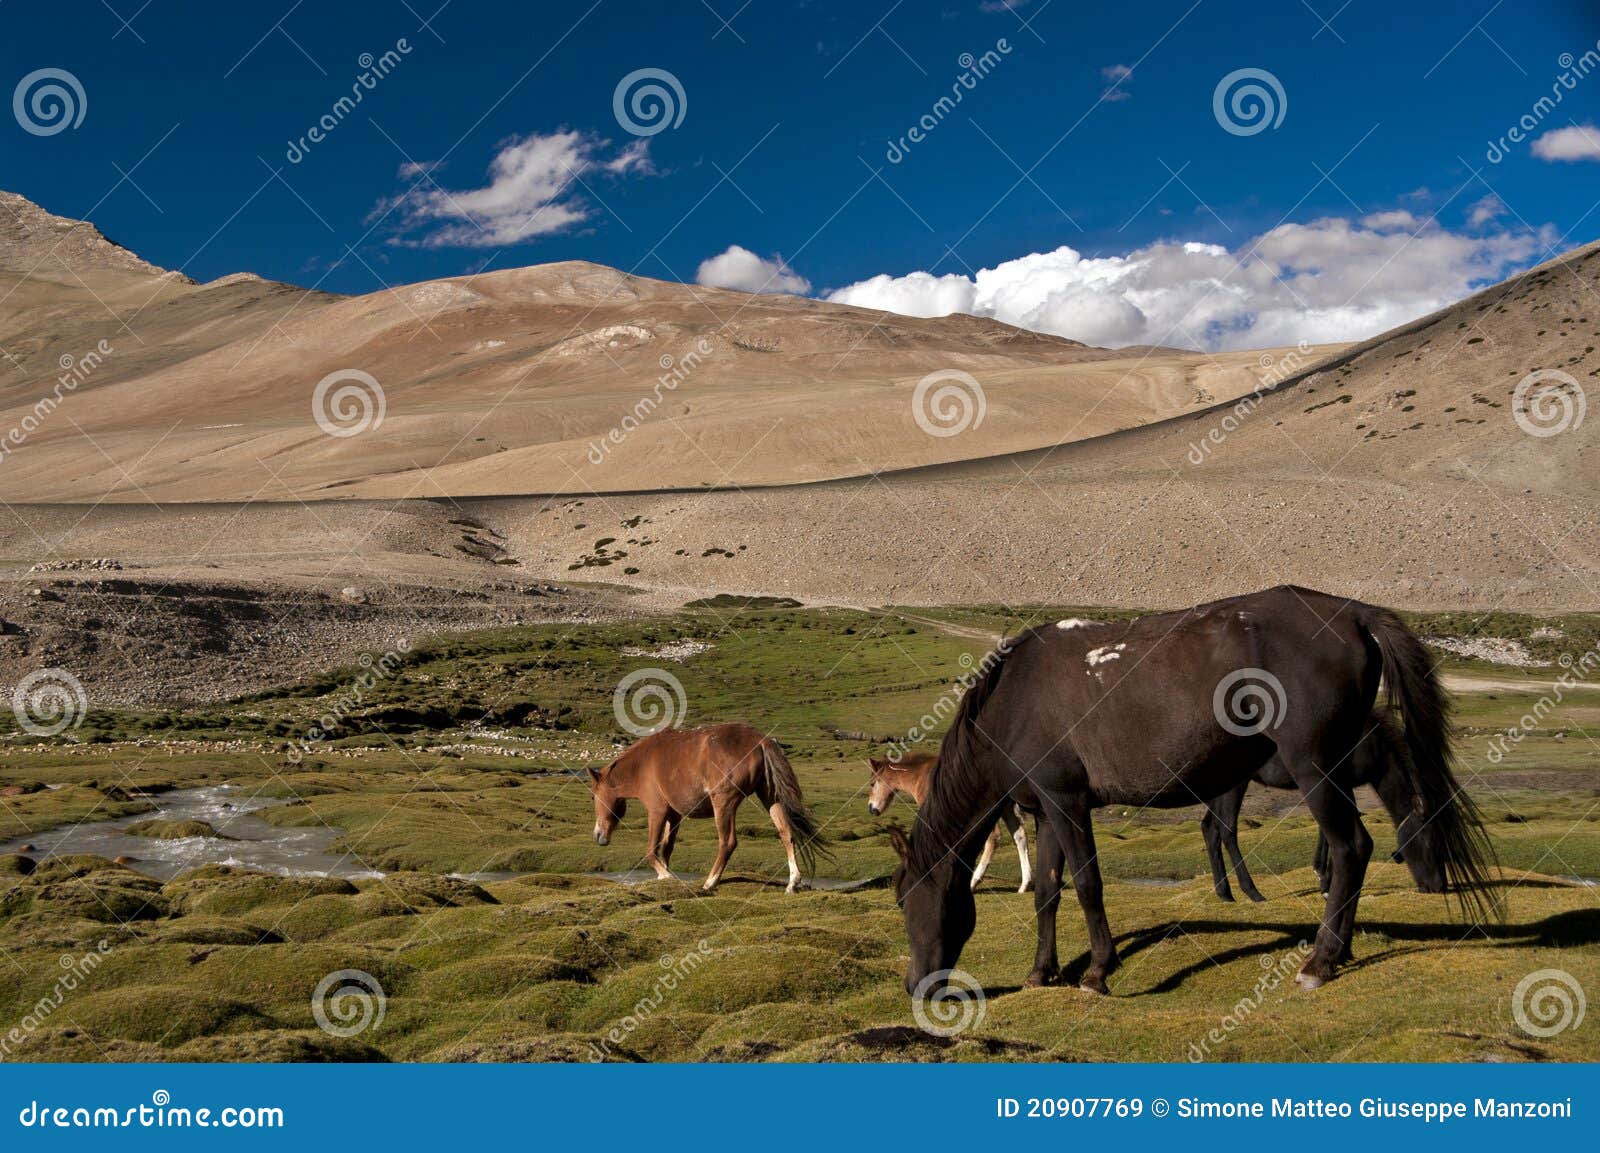 horses in karzok, ladakh, india